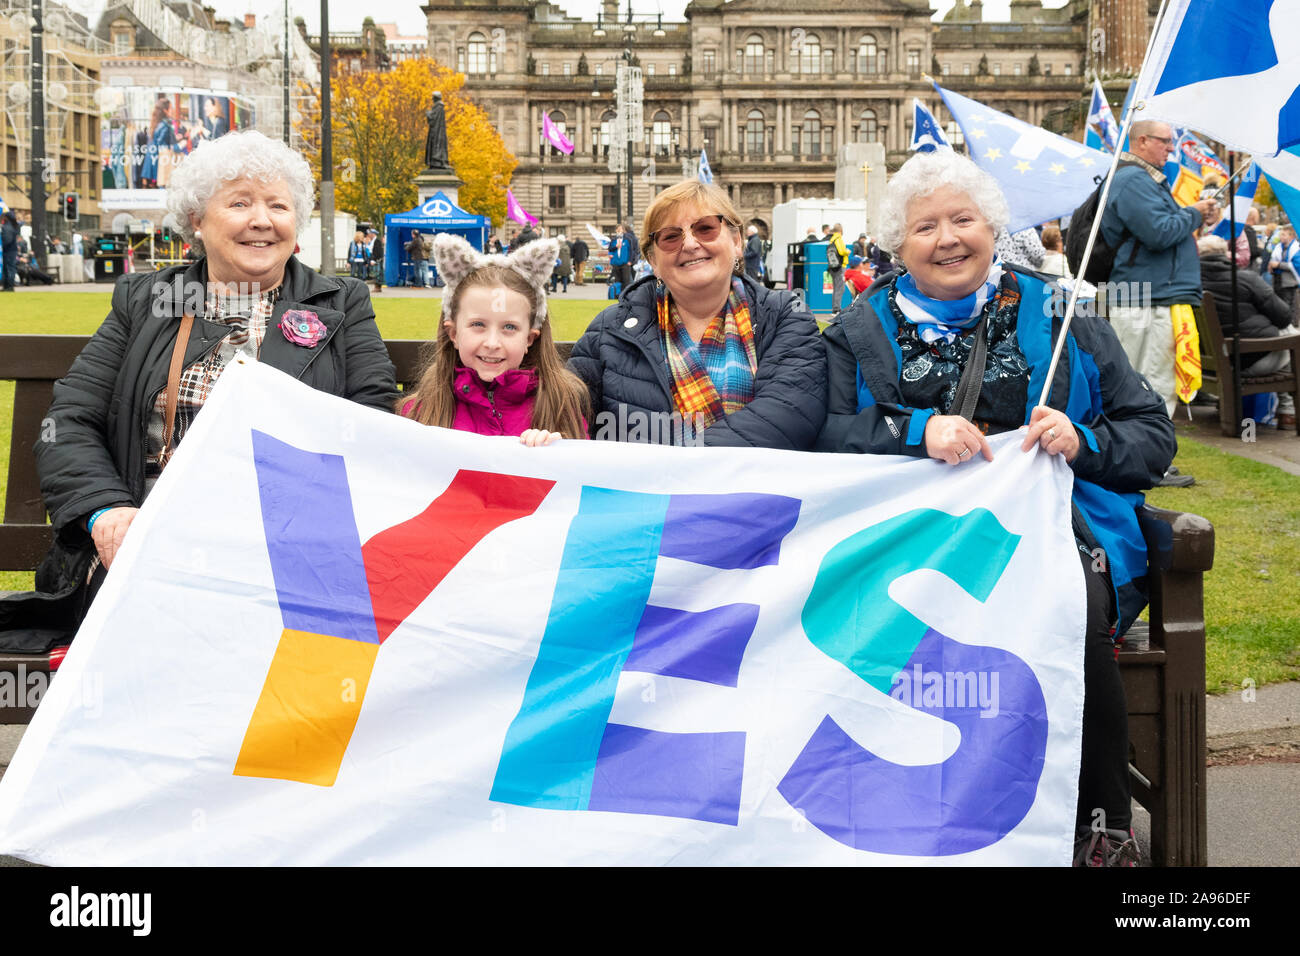 Indépendantistes écossais tenant un grand OUI bannière lors d'un Rallye indyref 2020 indépendance de George Square, Glasgow, Écosse, Royaume-Uni Banque D'Images